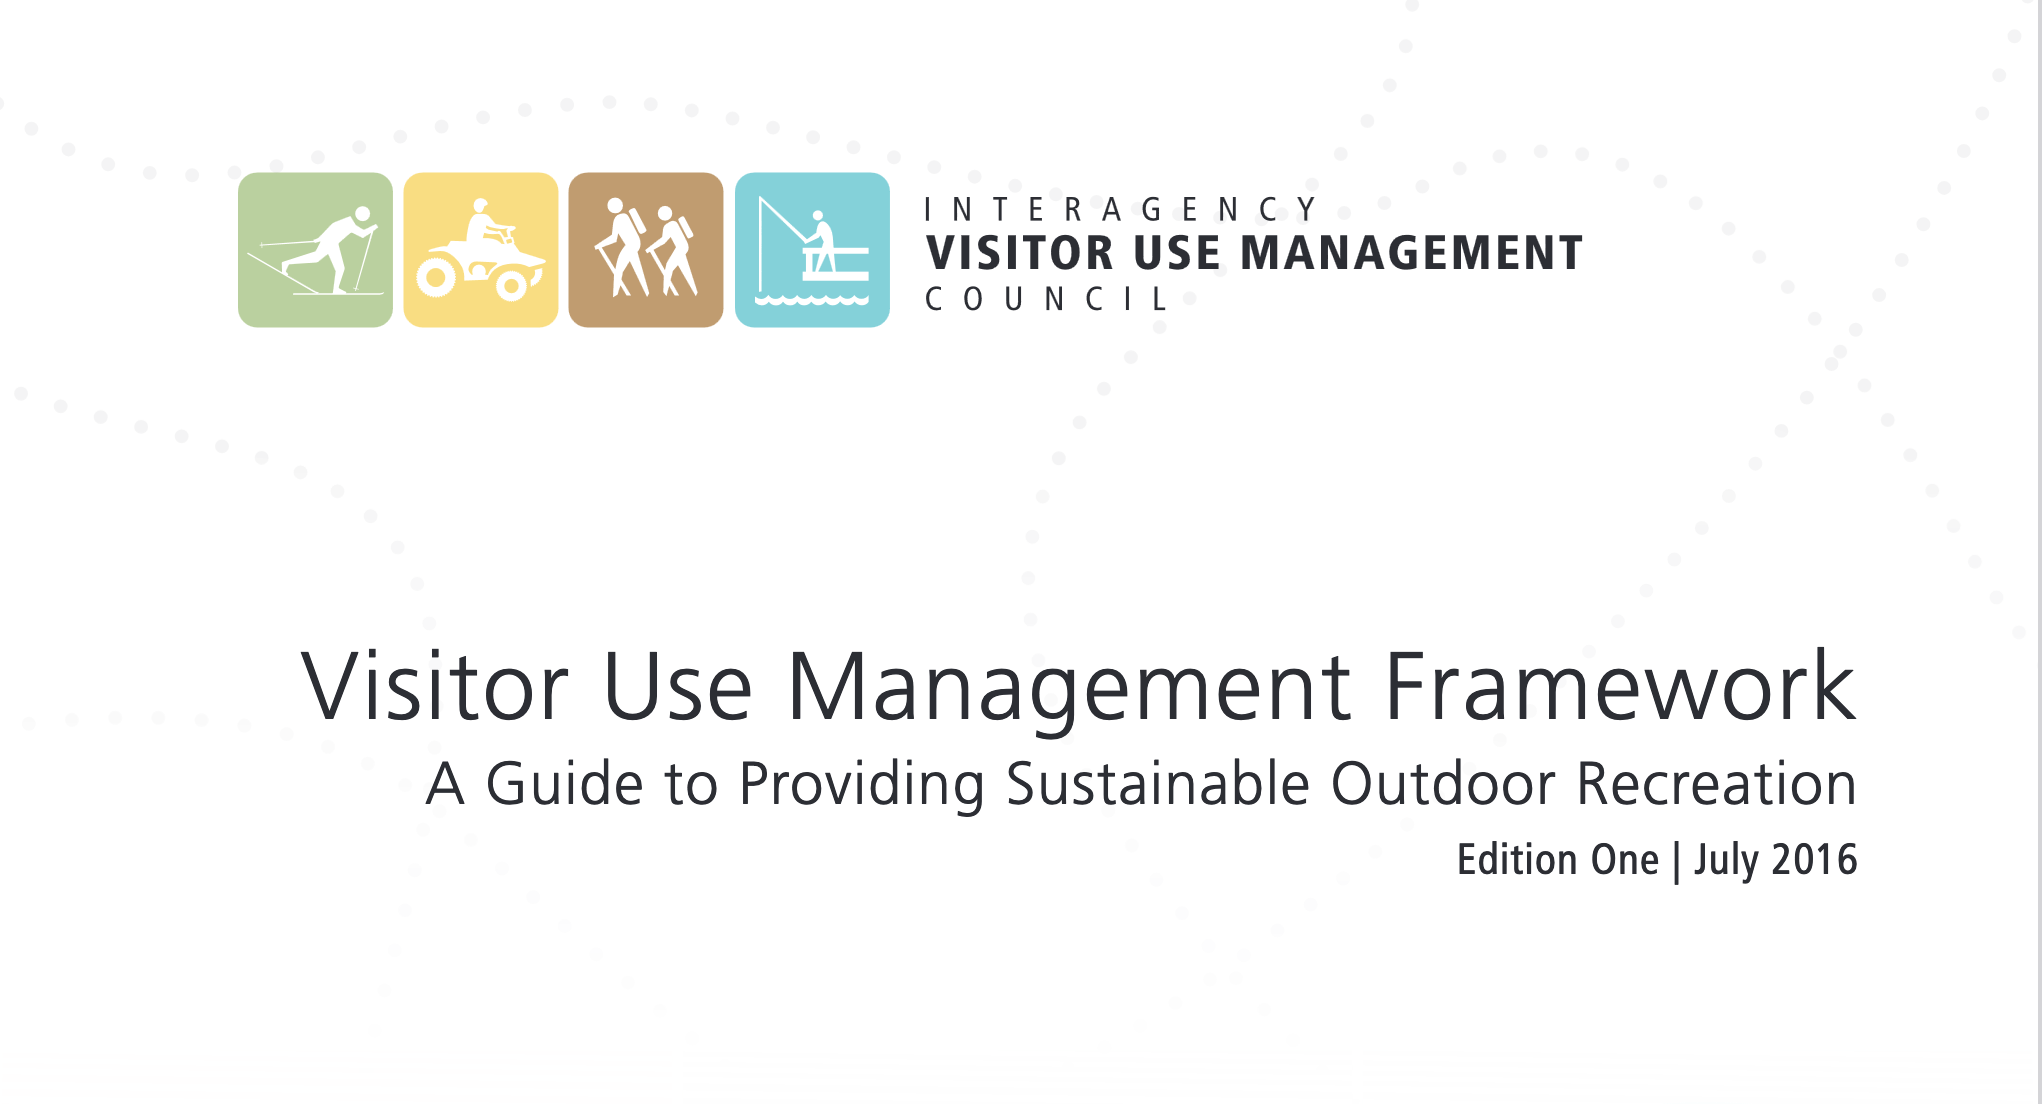 Interagency Visitor Use Management Framework